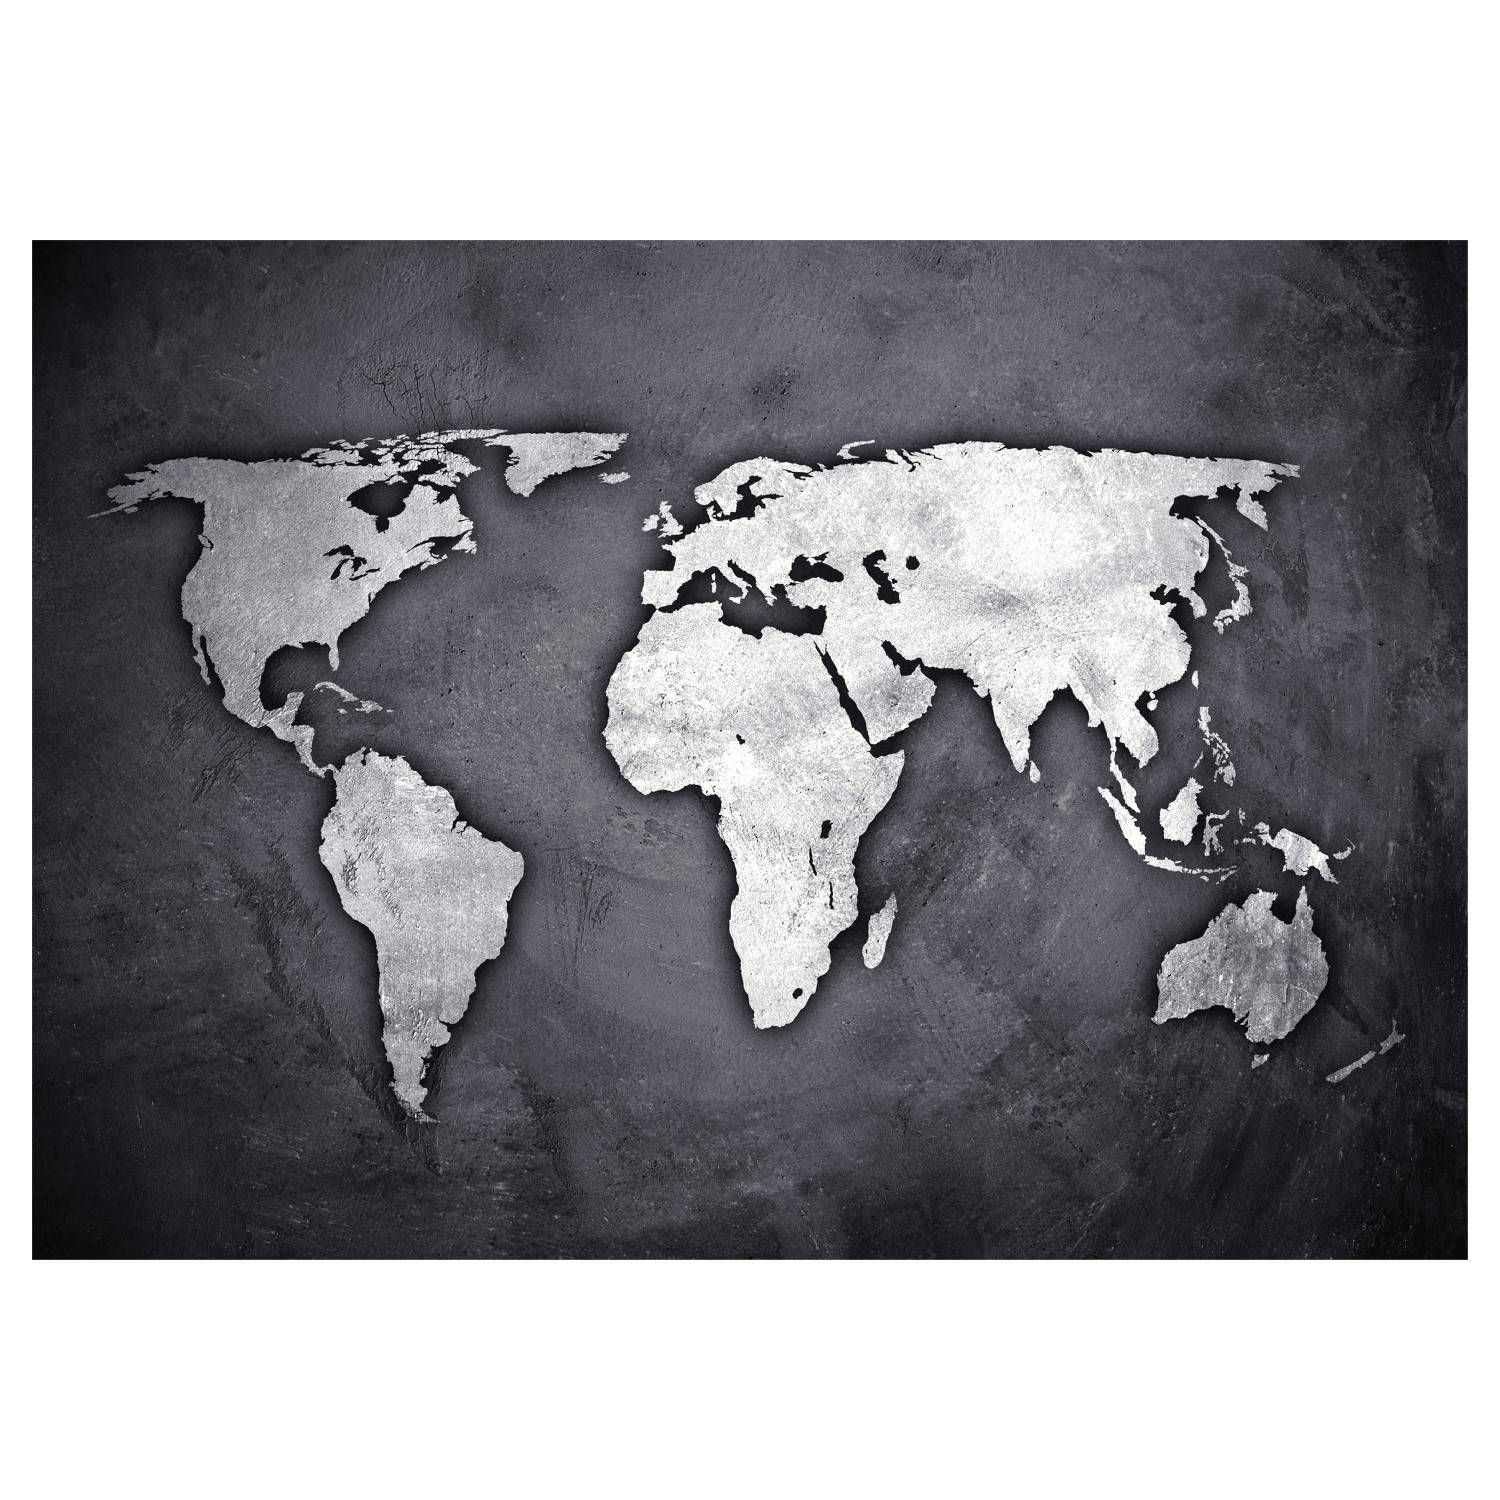 Atmosphera Samolepka na zeď s mapou světa, 50 x 70 cm, stříbro-černá - EMAKO.CZ s.r.o.